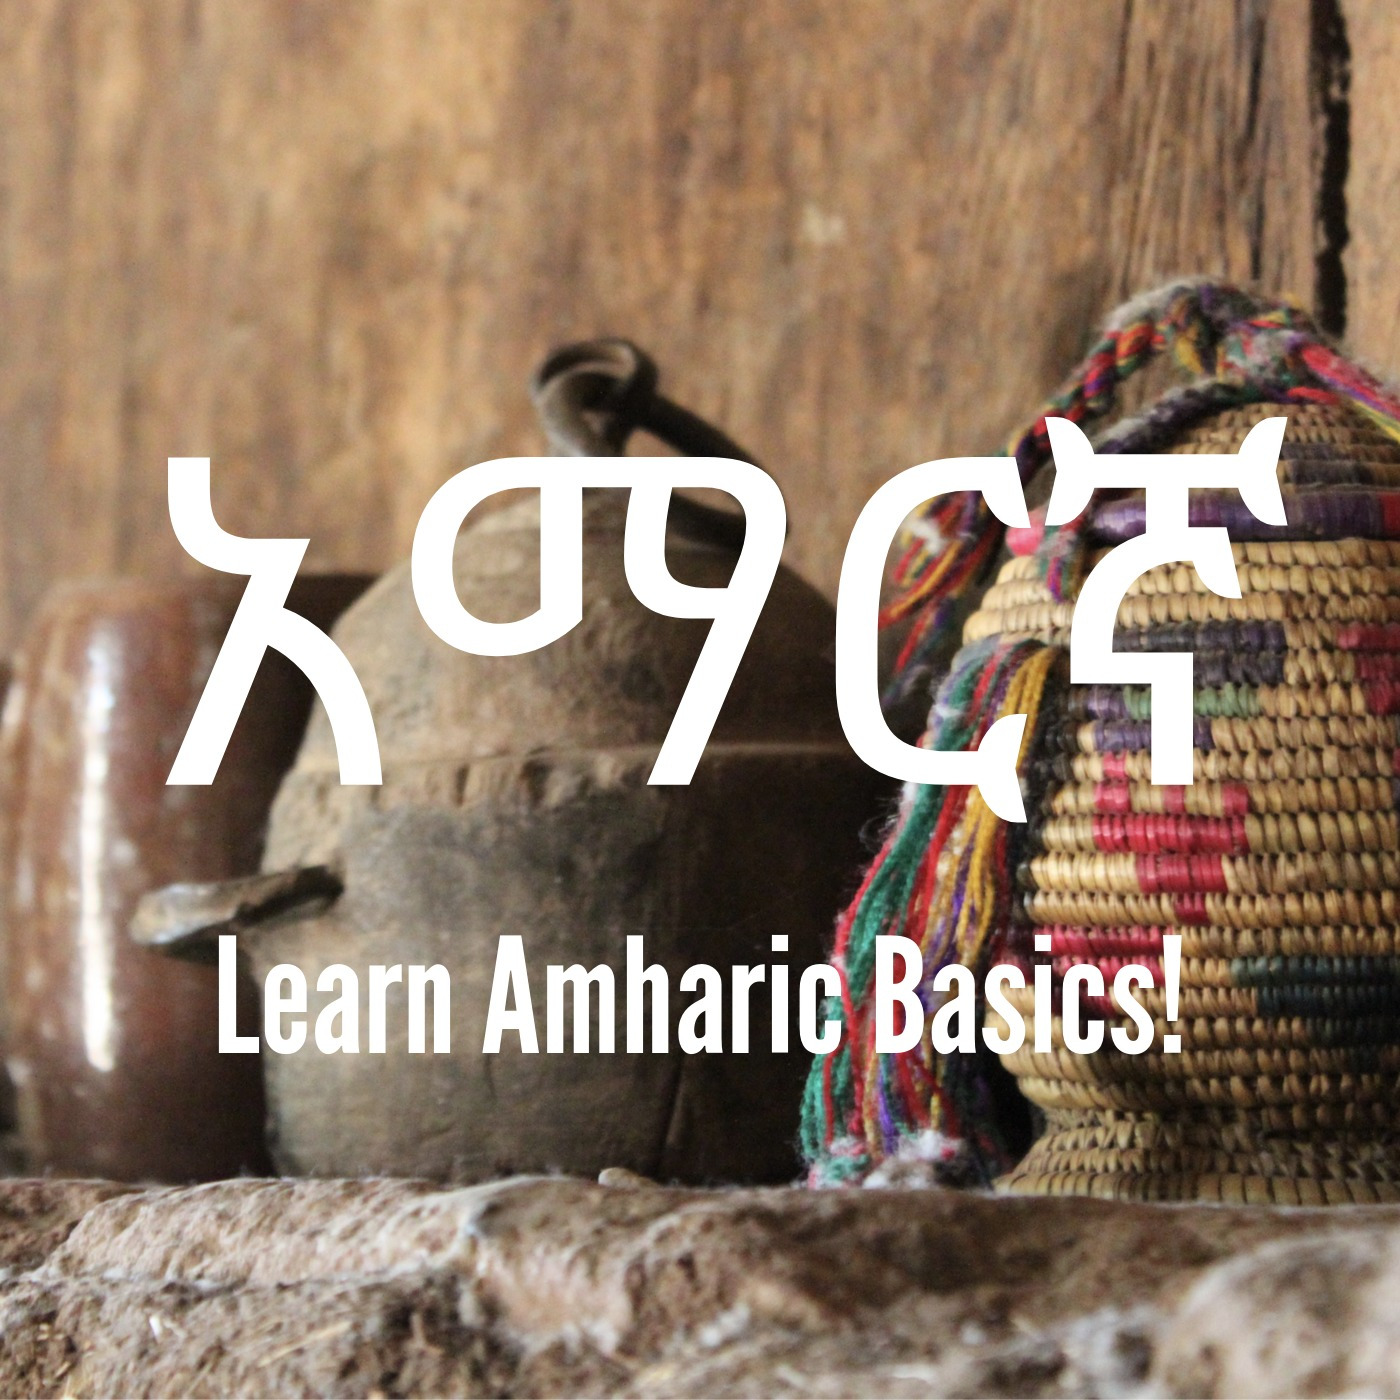 Learn Amharic Basics! - Unit 2